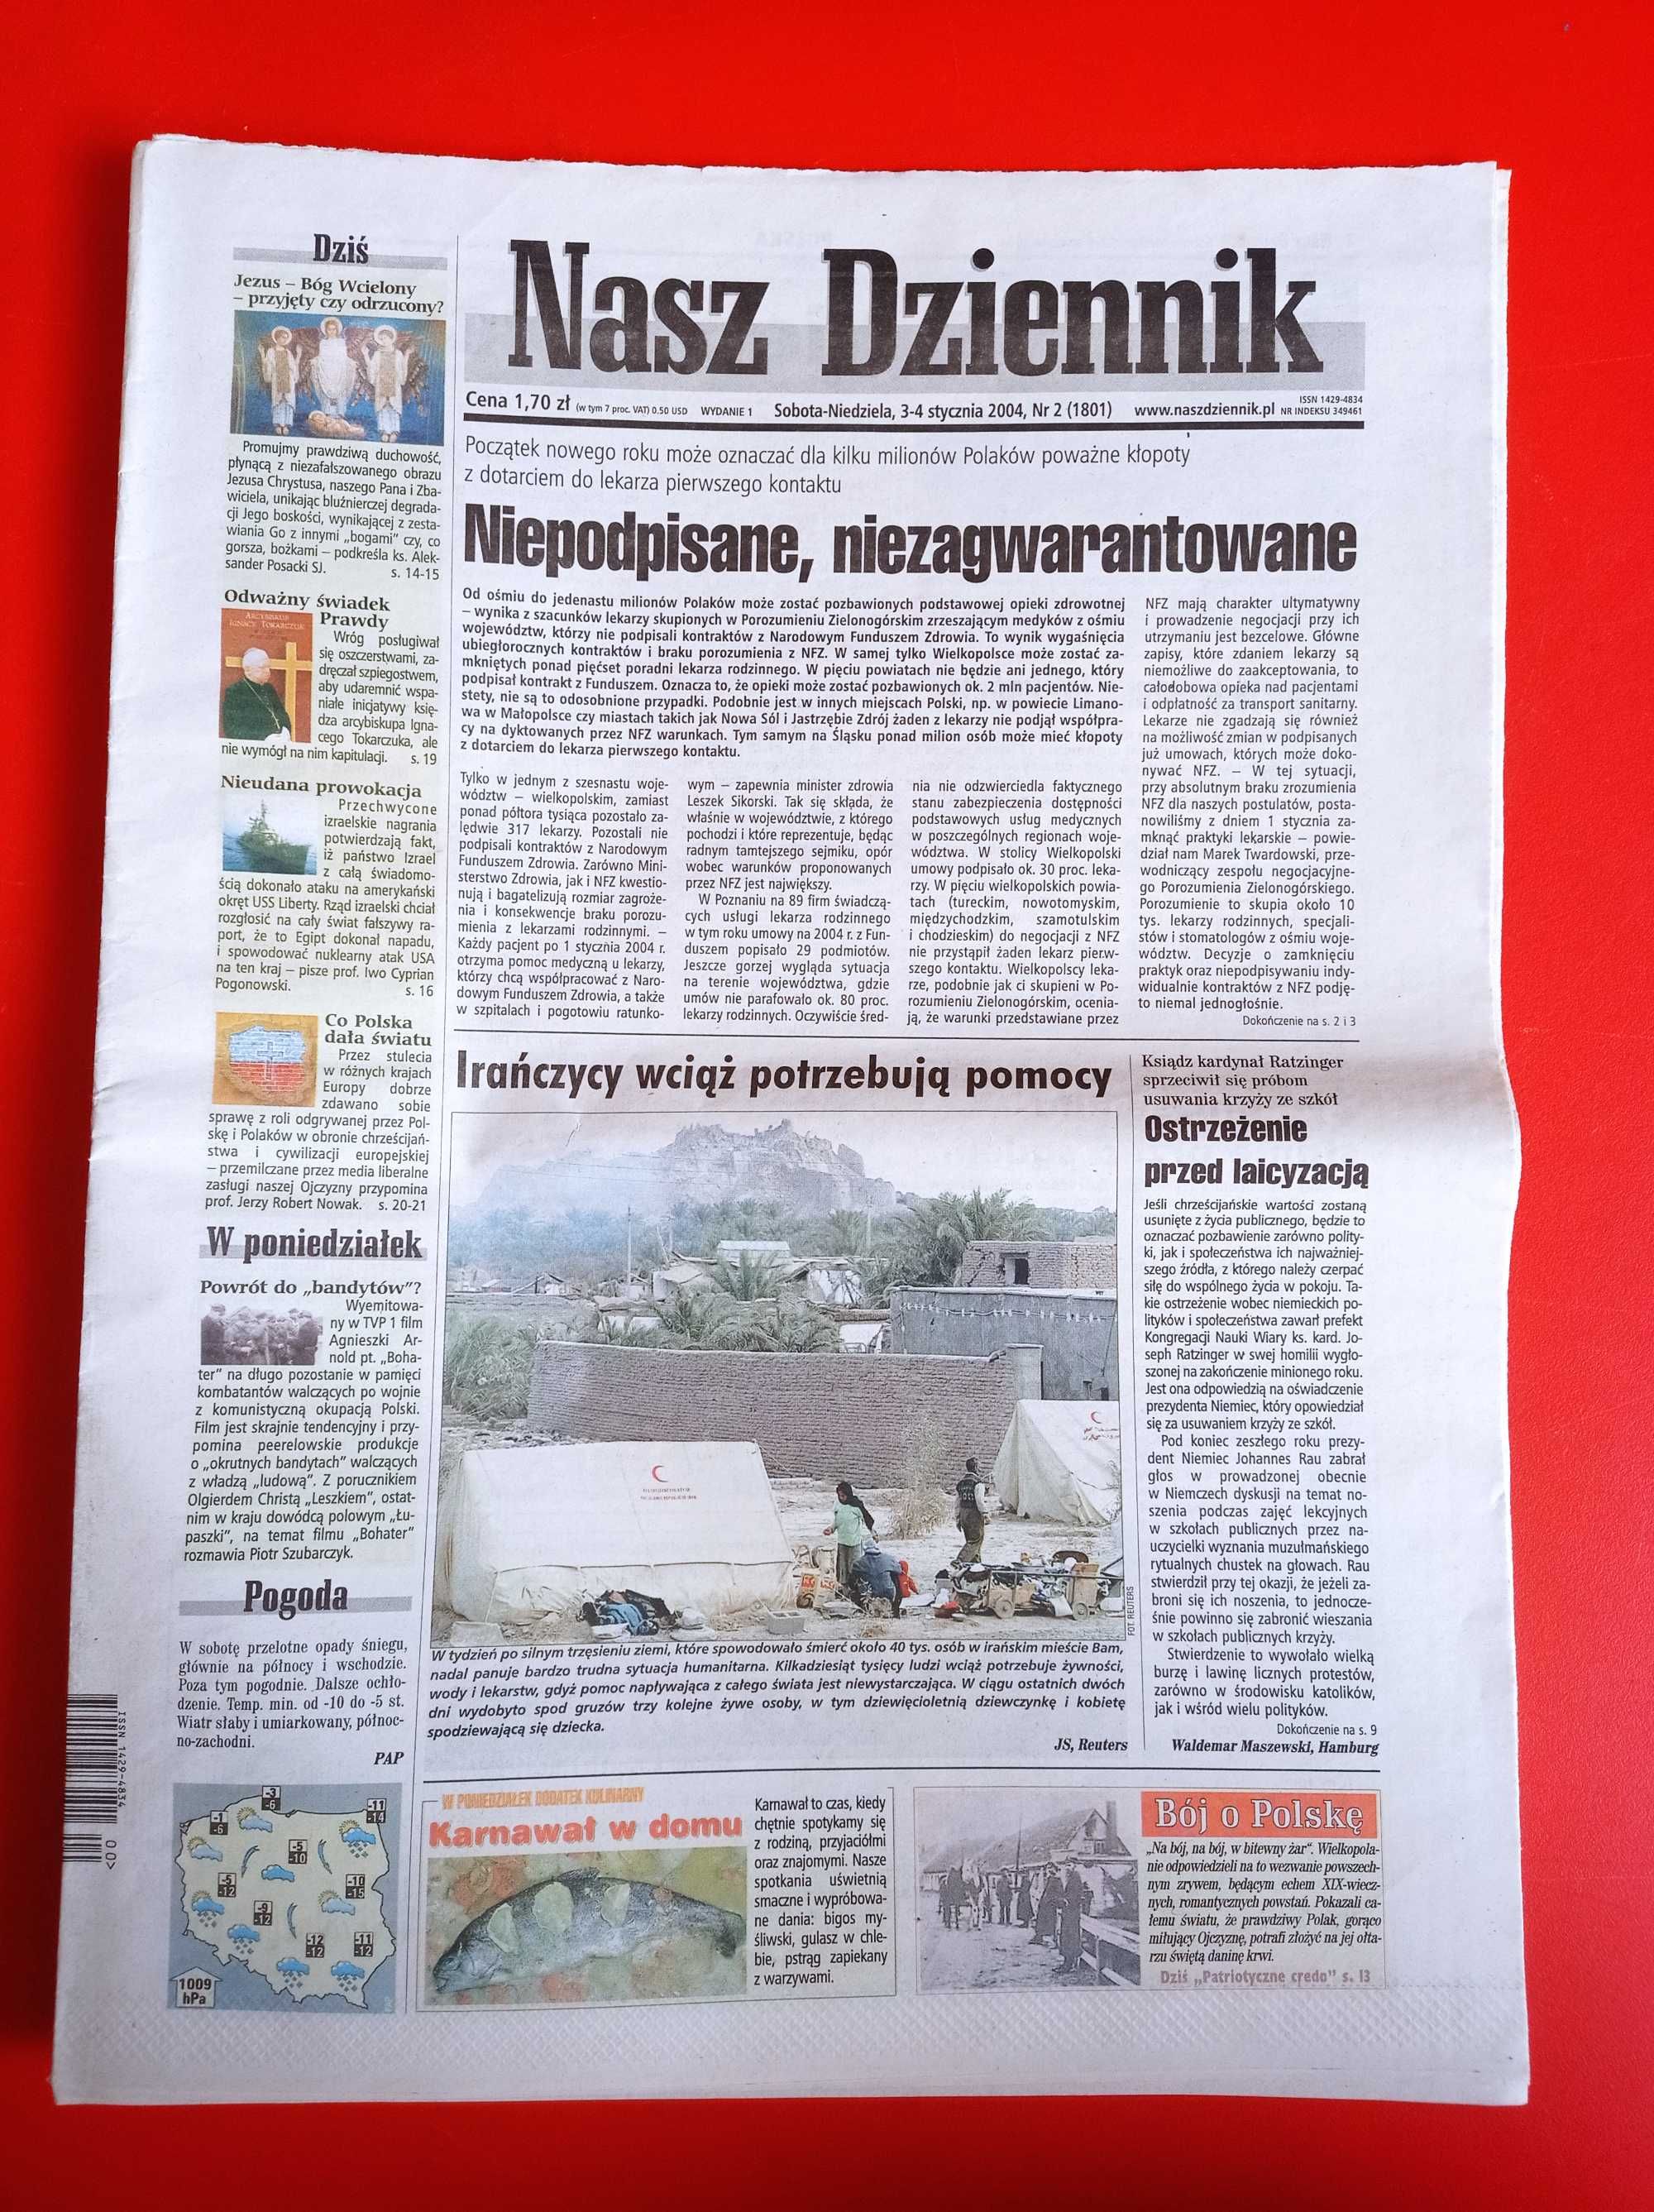 Nasz Dziennik, nr 2/2004, 3-4 stycznia 2004